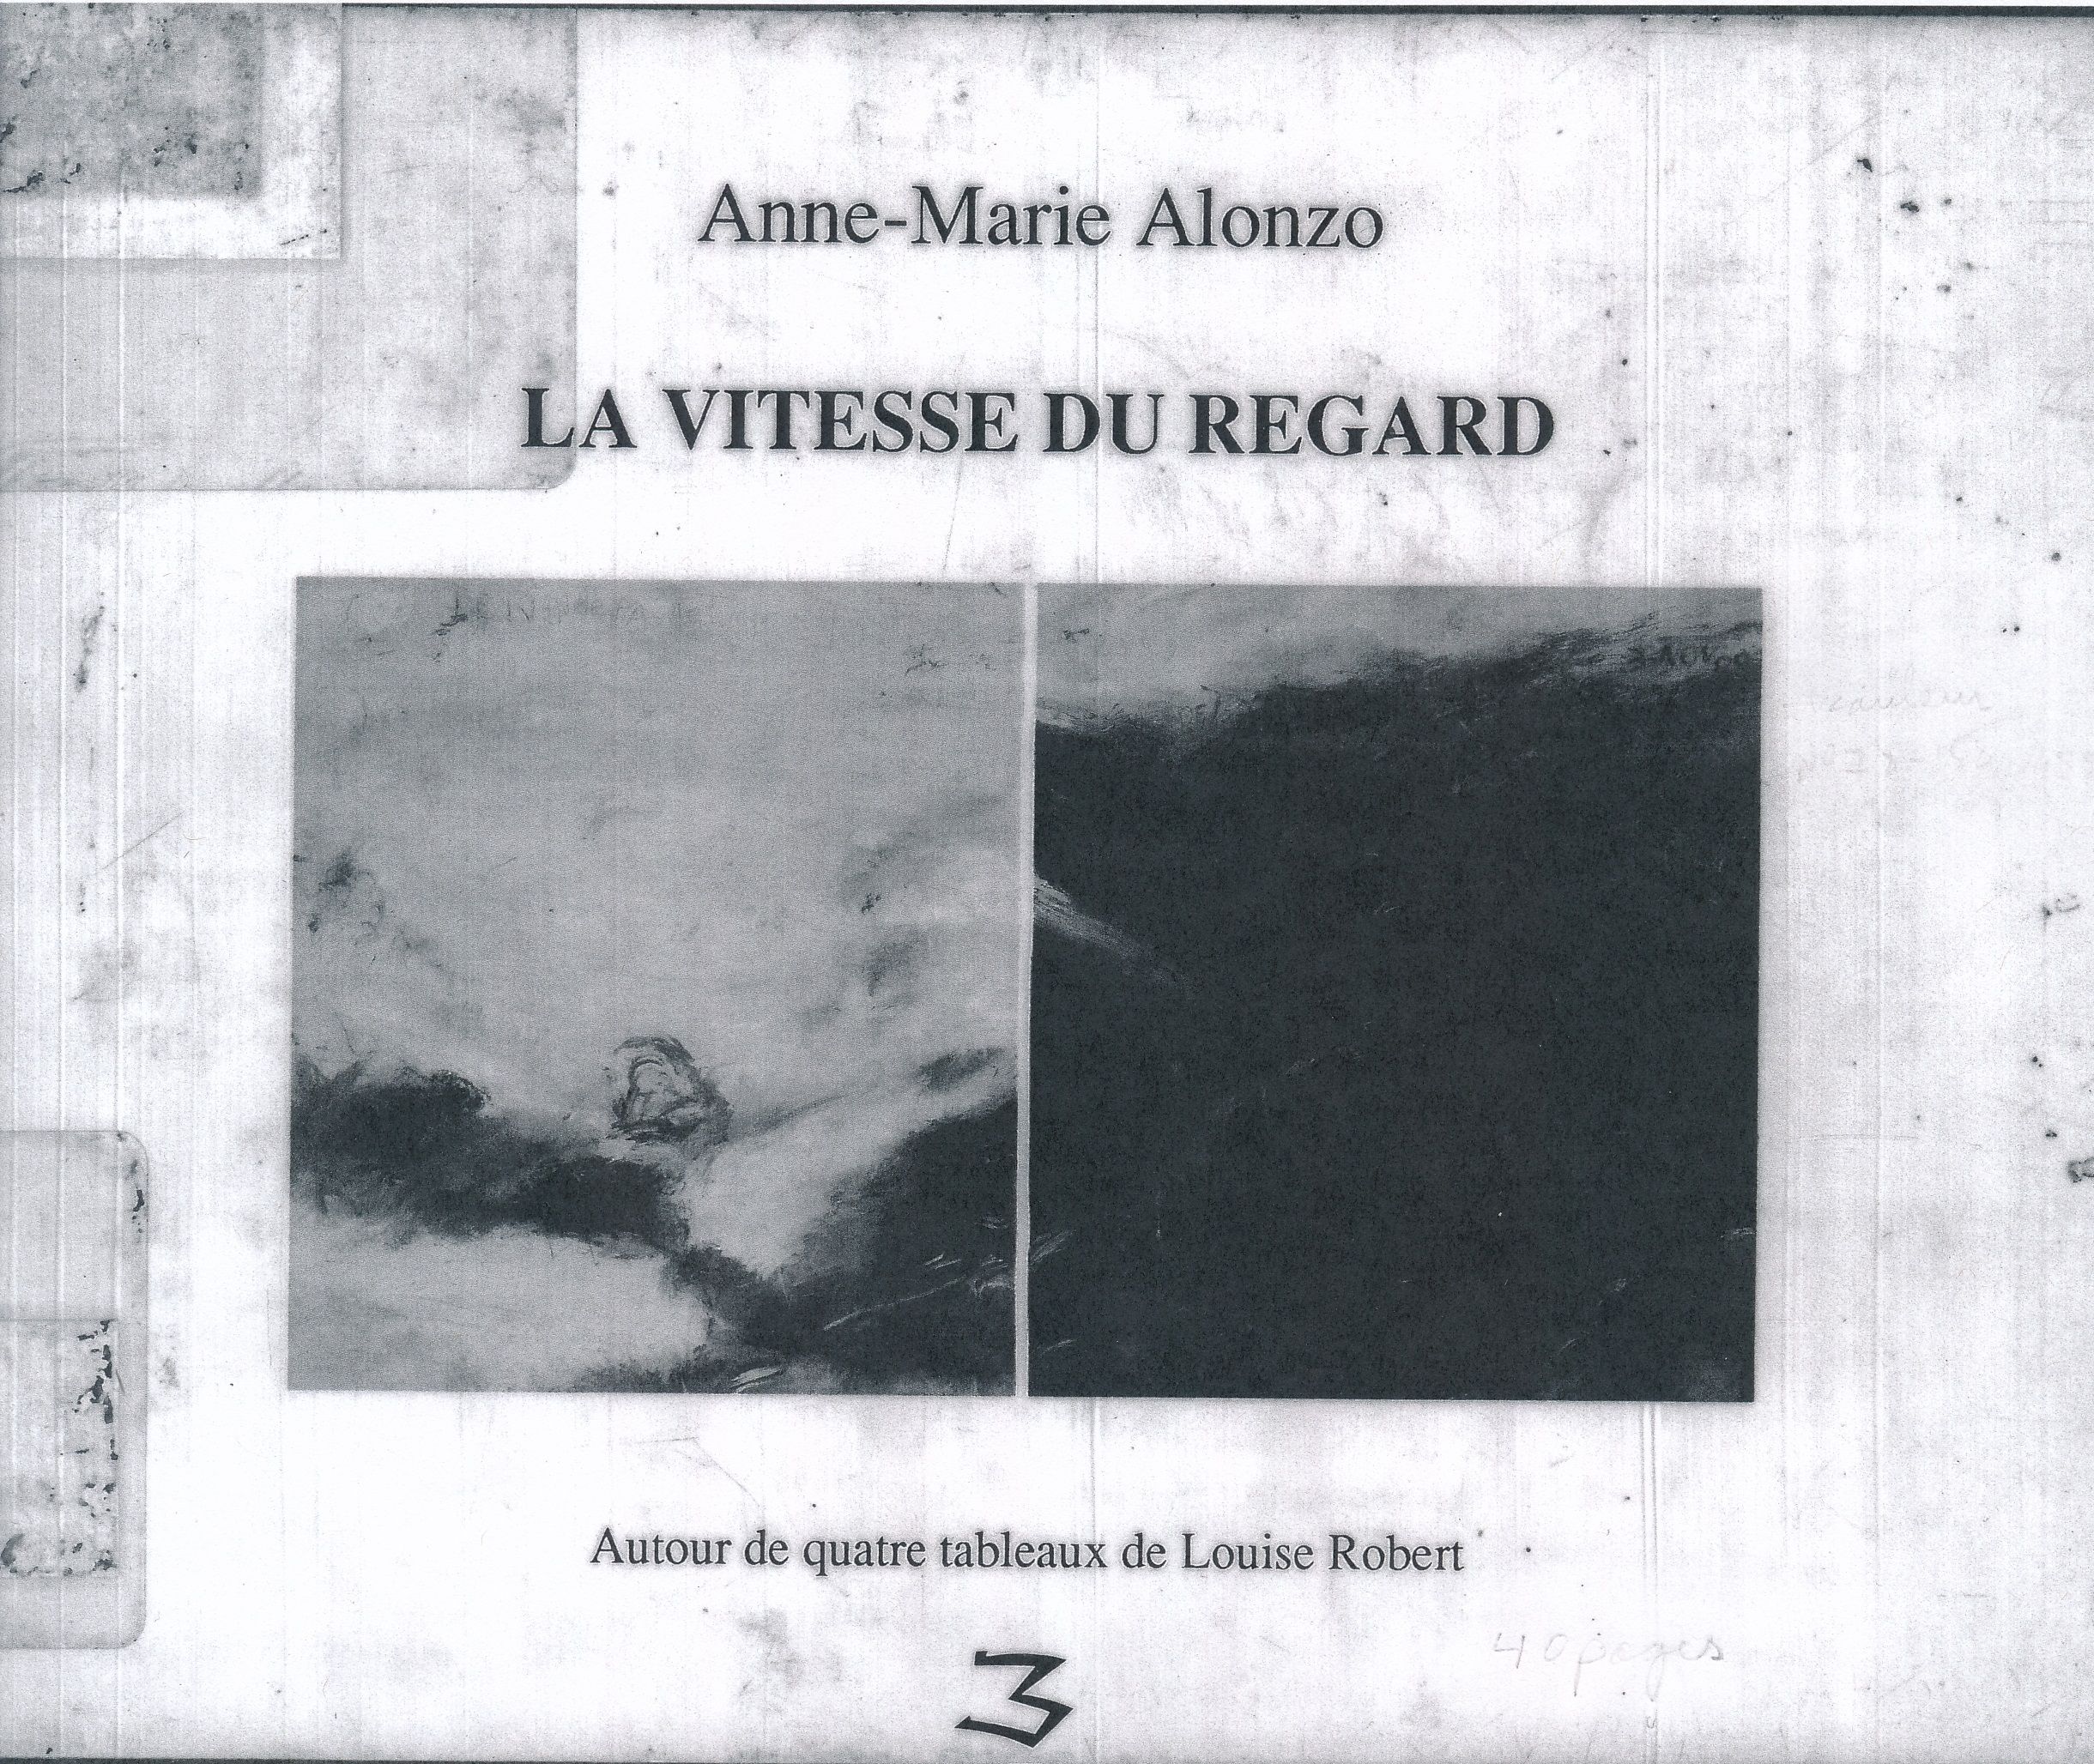 Couverture d’Anne-Marie ALONZO, La vitesse du regard. Autour de quatre tableaux de Louise Robert, Laval, Éditions TROIS, 1990.